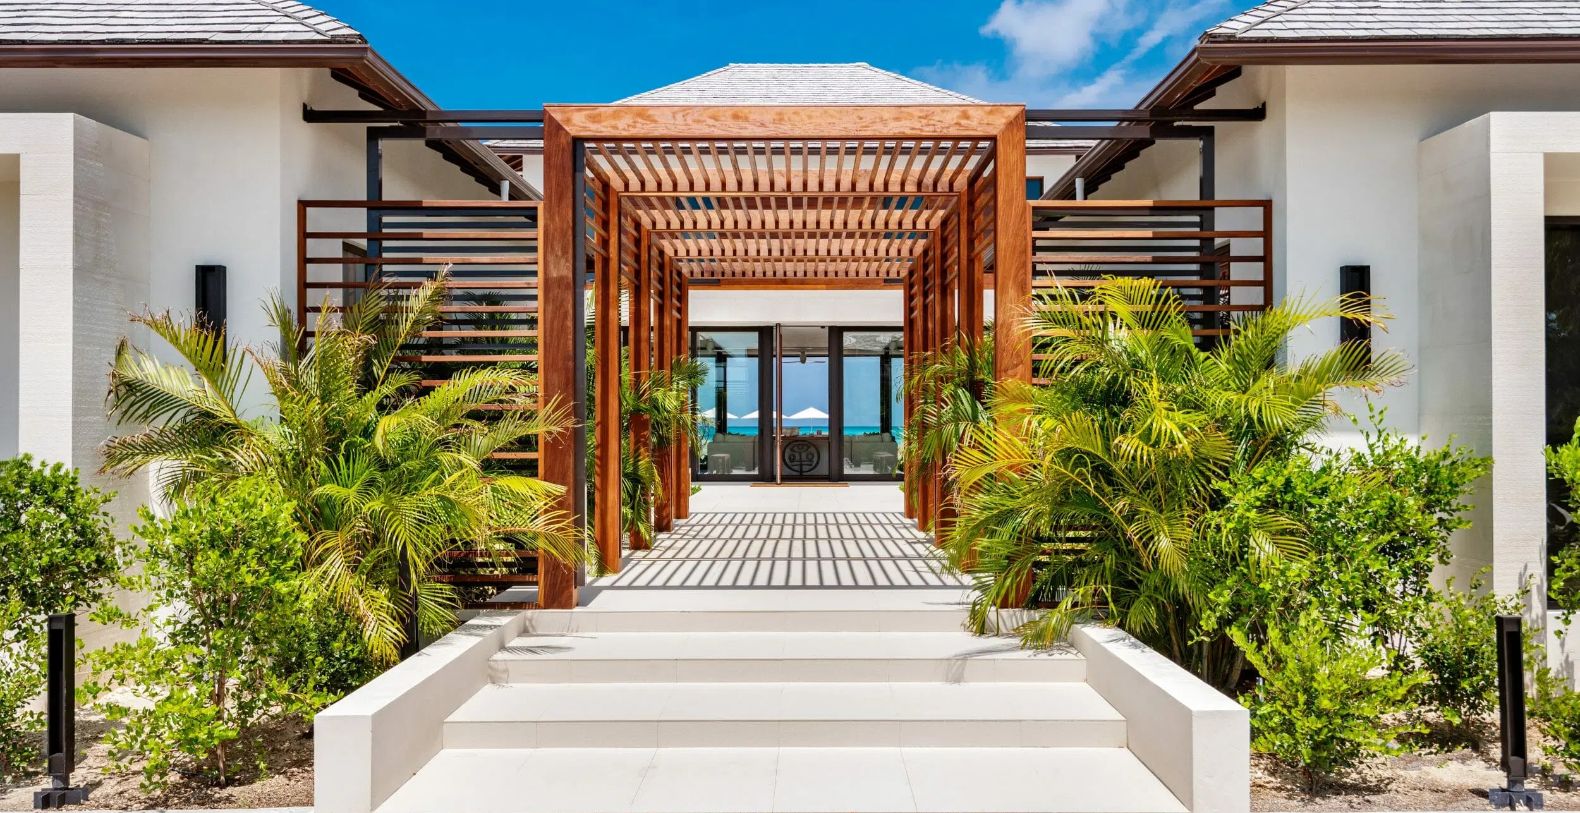 Vision Beach Turks & Caicos Vacation Villa - Grace Bay, Providenciales